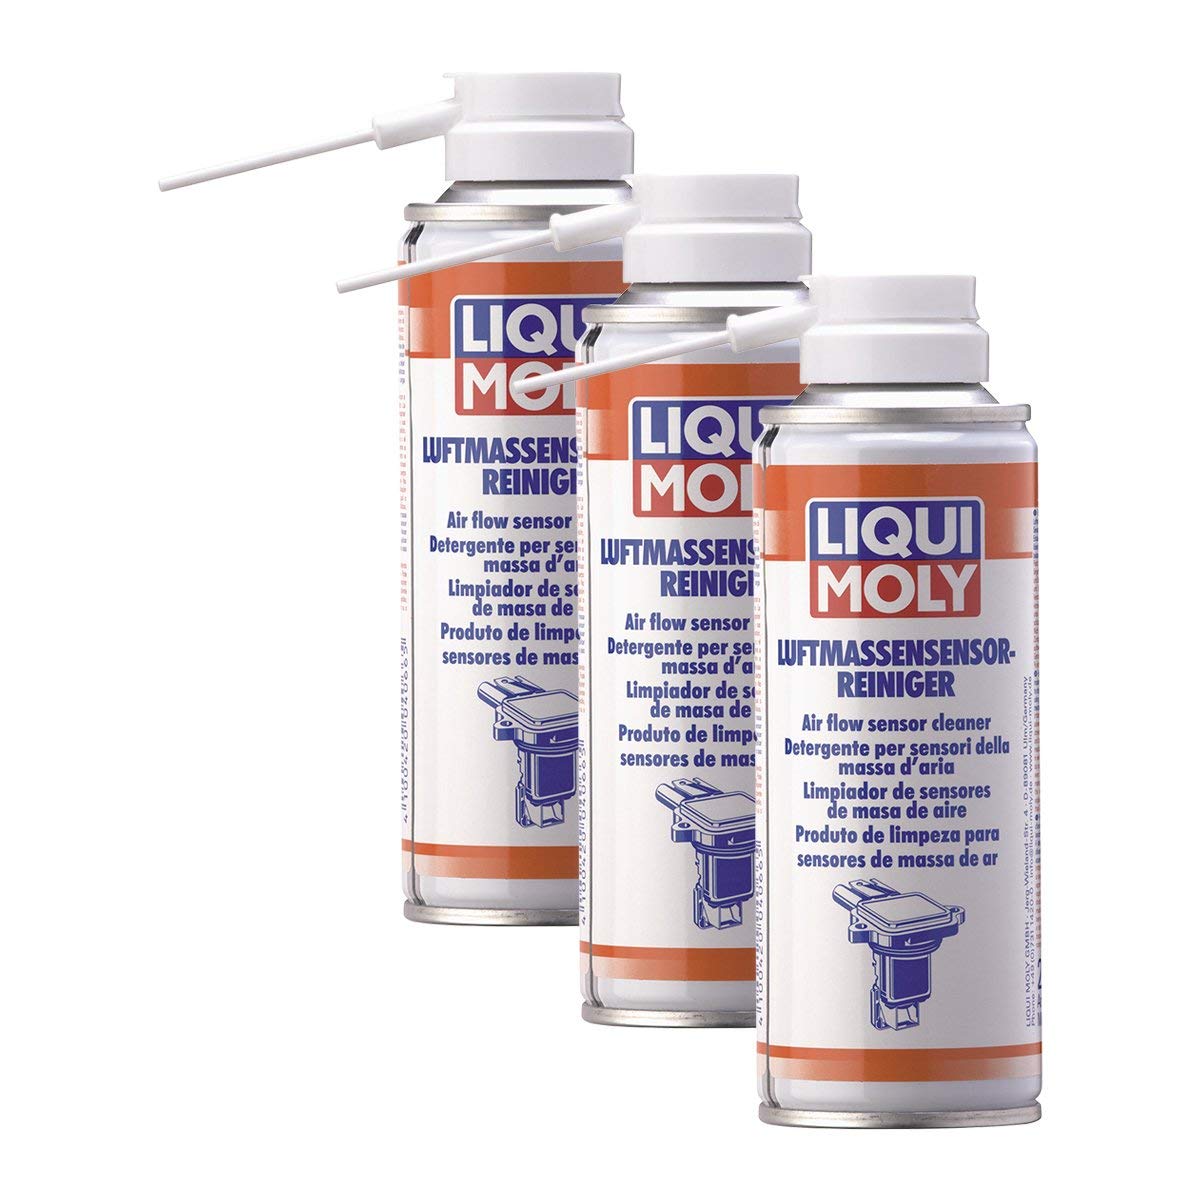 3x LIQUI MOLY 4066 Luftmassensensor-Reiniger Reinigungsspray 200ml von LIQUI-MOLY_bundle